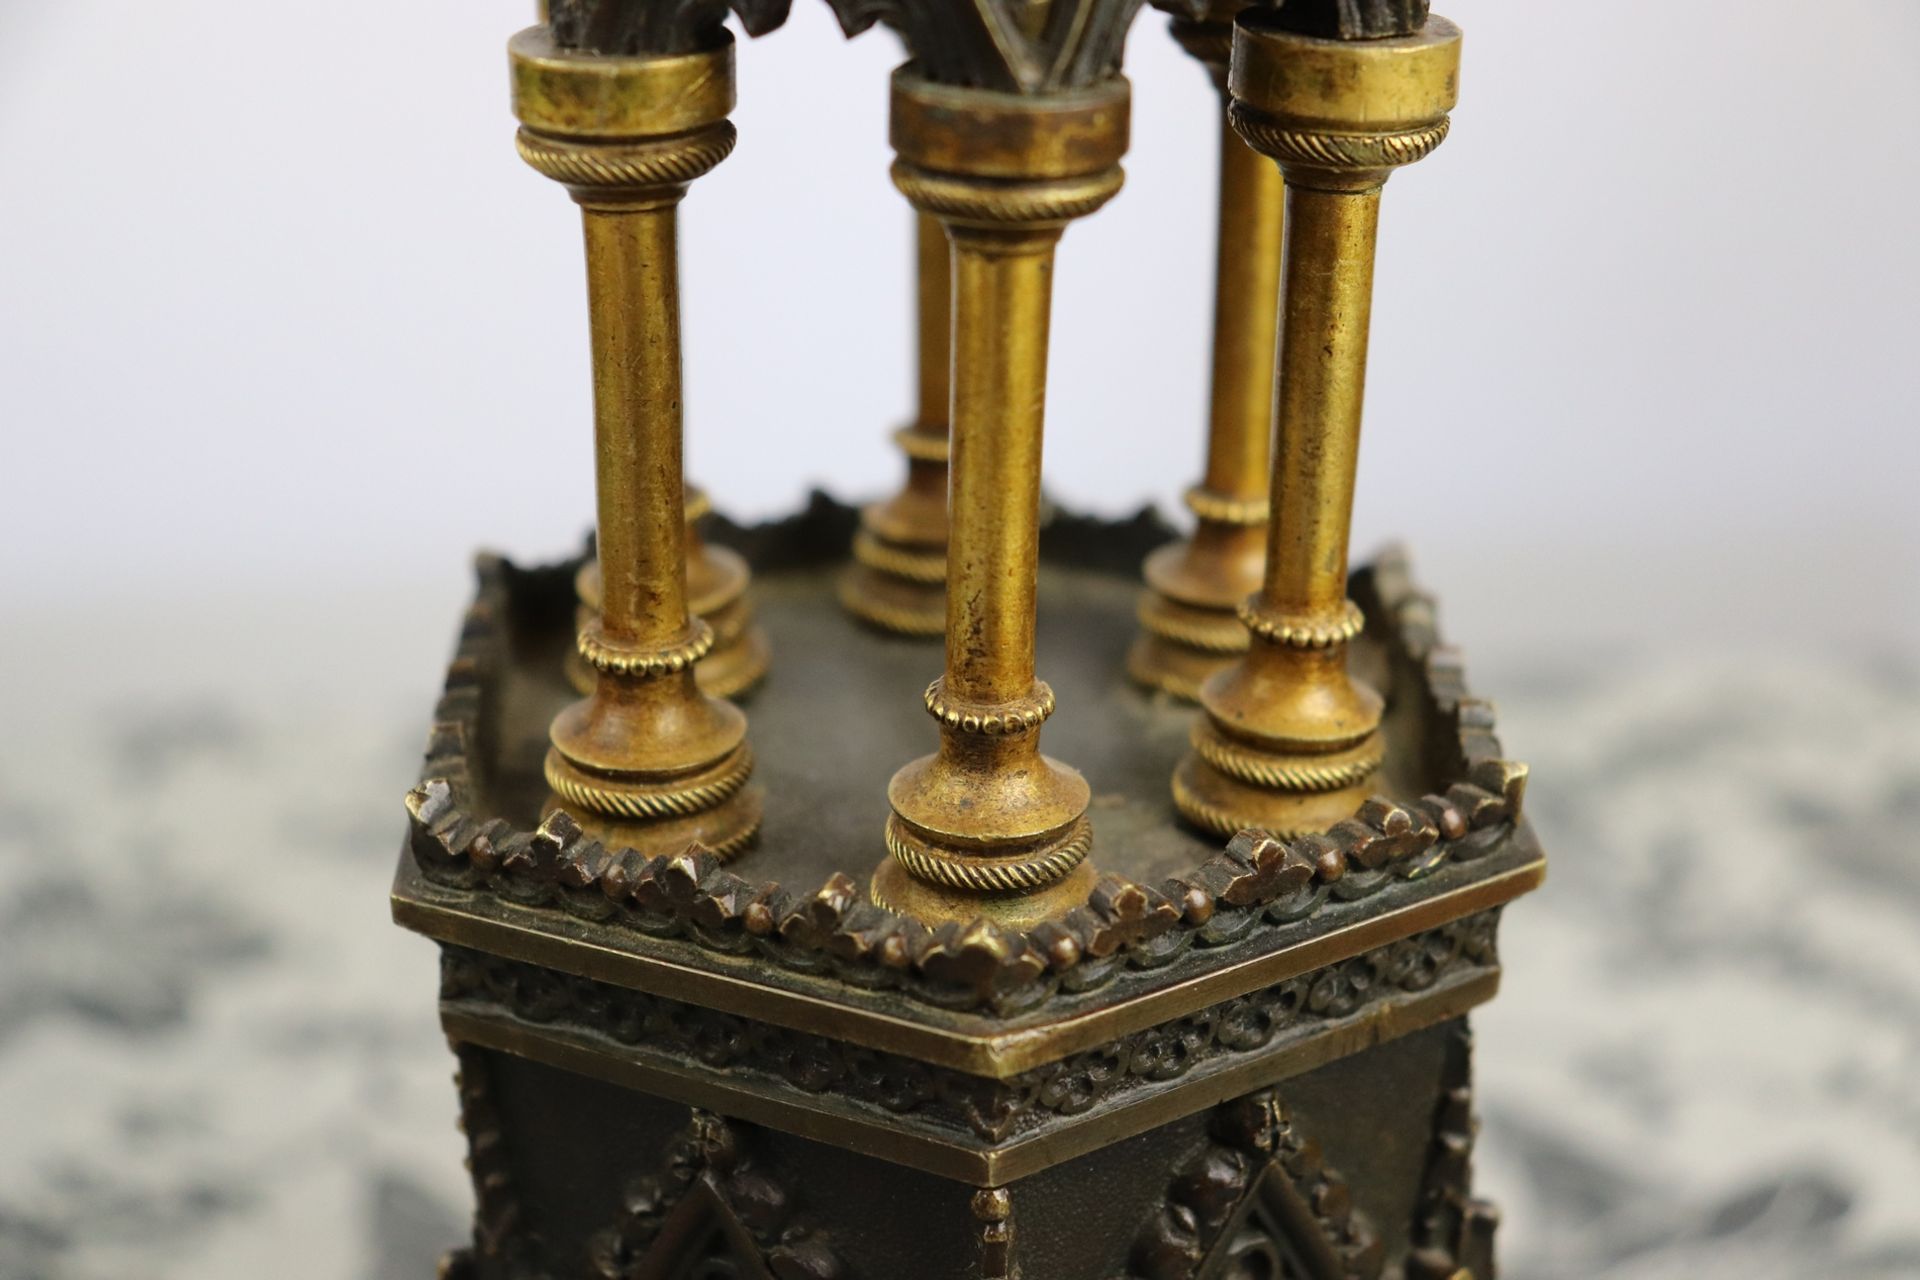 Tischlampe - Neogotik um1860, Bronze/Messing, einflammig, hexagonaler, mehrfach abgetr - Image 4 of 9